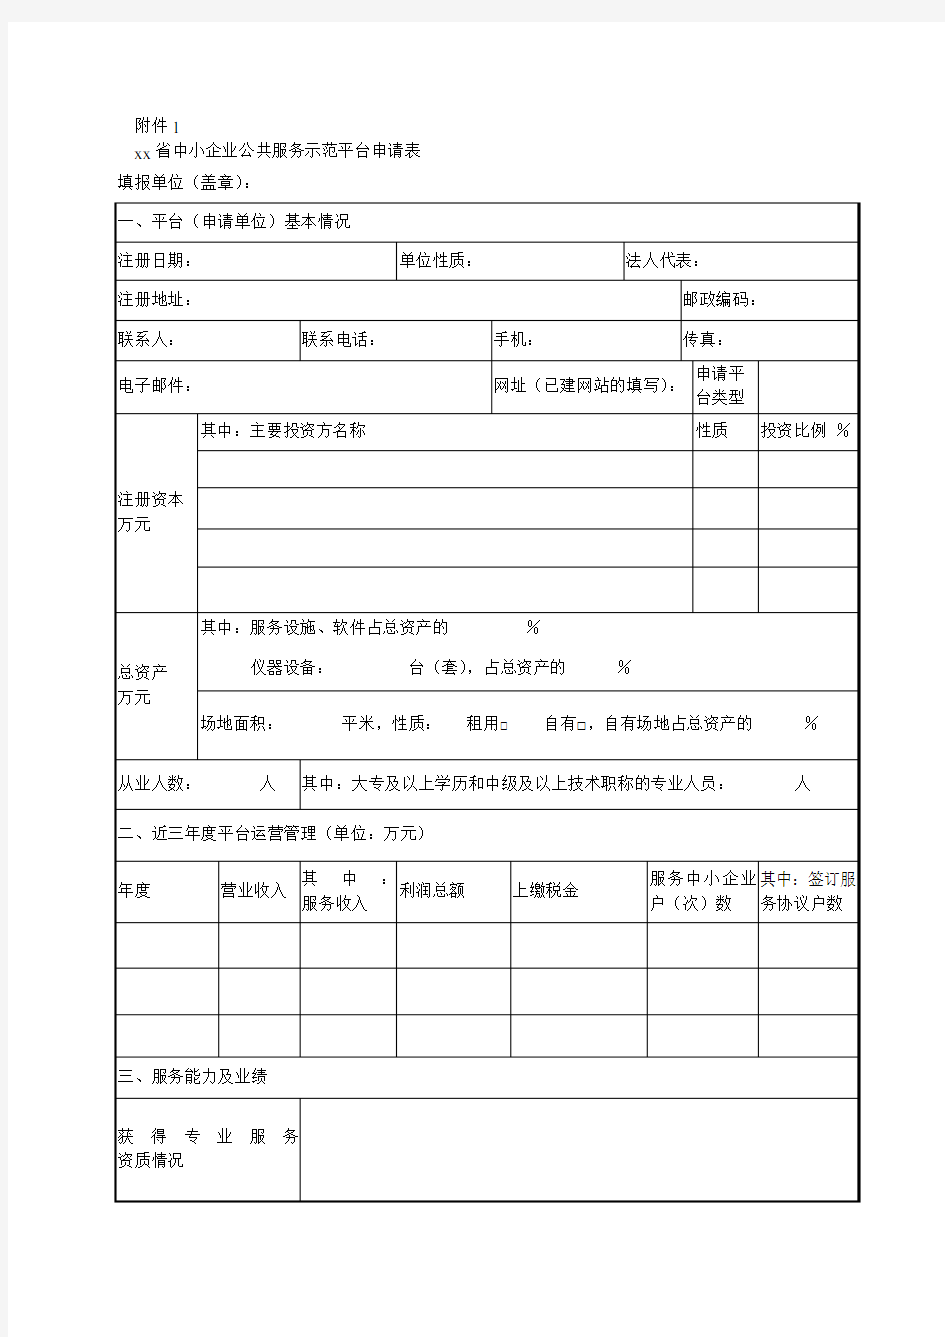 XX省中小企业公共服务示范平台申请表